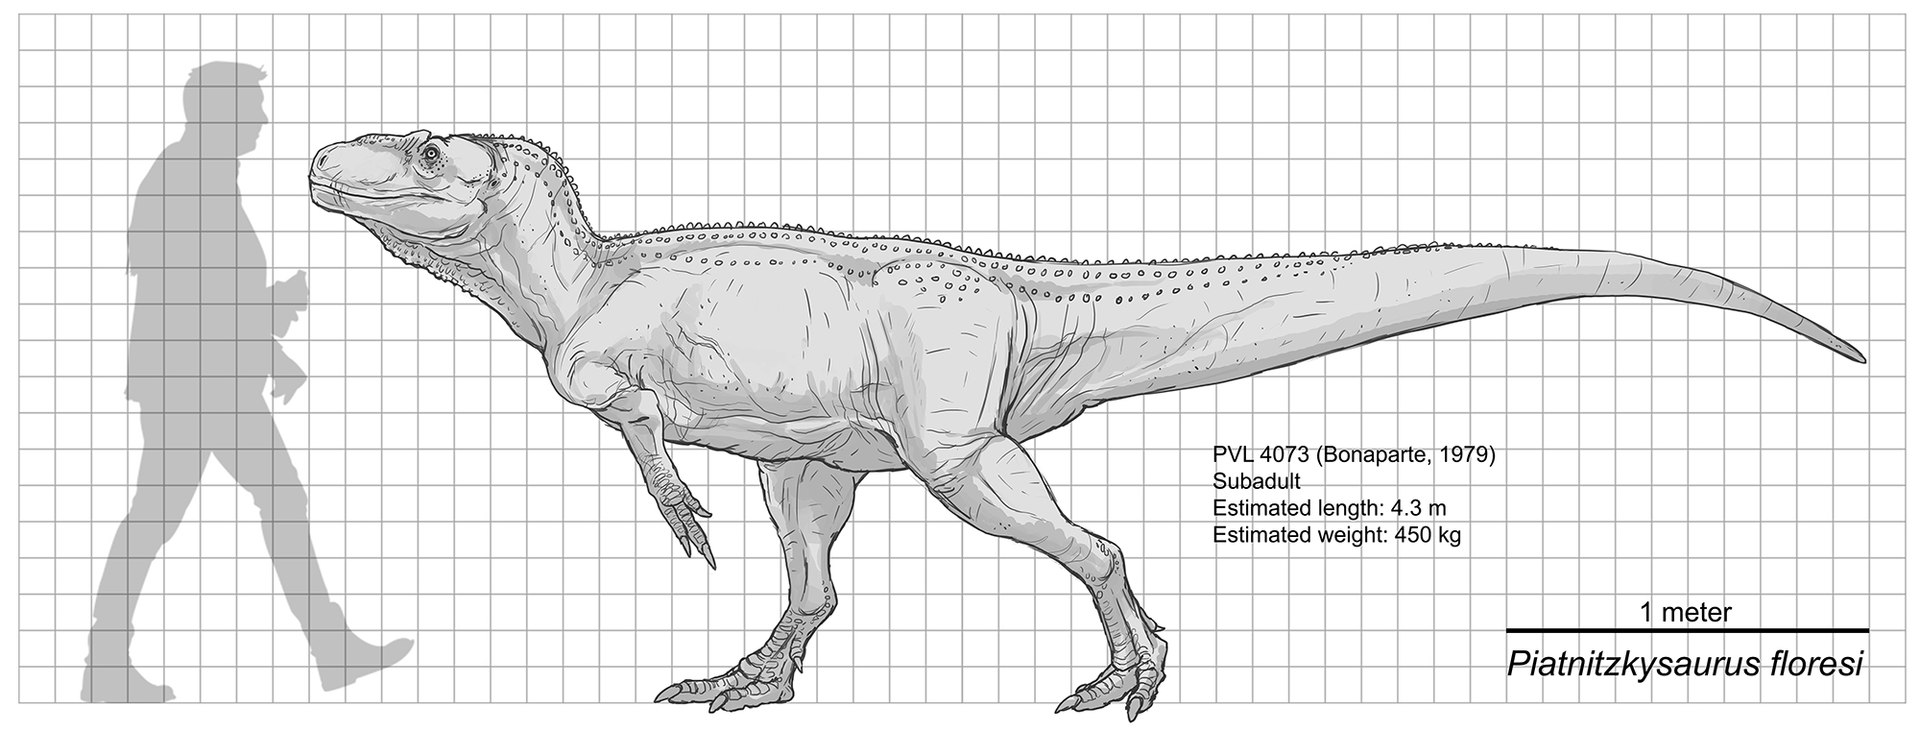 Porovnání velikosti holotypu piatnitzkysaura s dospělým člověkem (délka dinosaura 4,3 metru). Pravděpodobně se však jednalo o nedospělého jedince, který ještě nebyl plně dorostlý. Velcí dospělci tohoto rodu tak mohli být nejspíš ještě podstatně větší